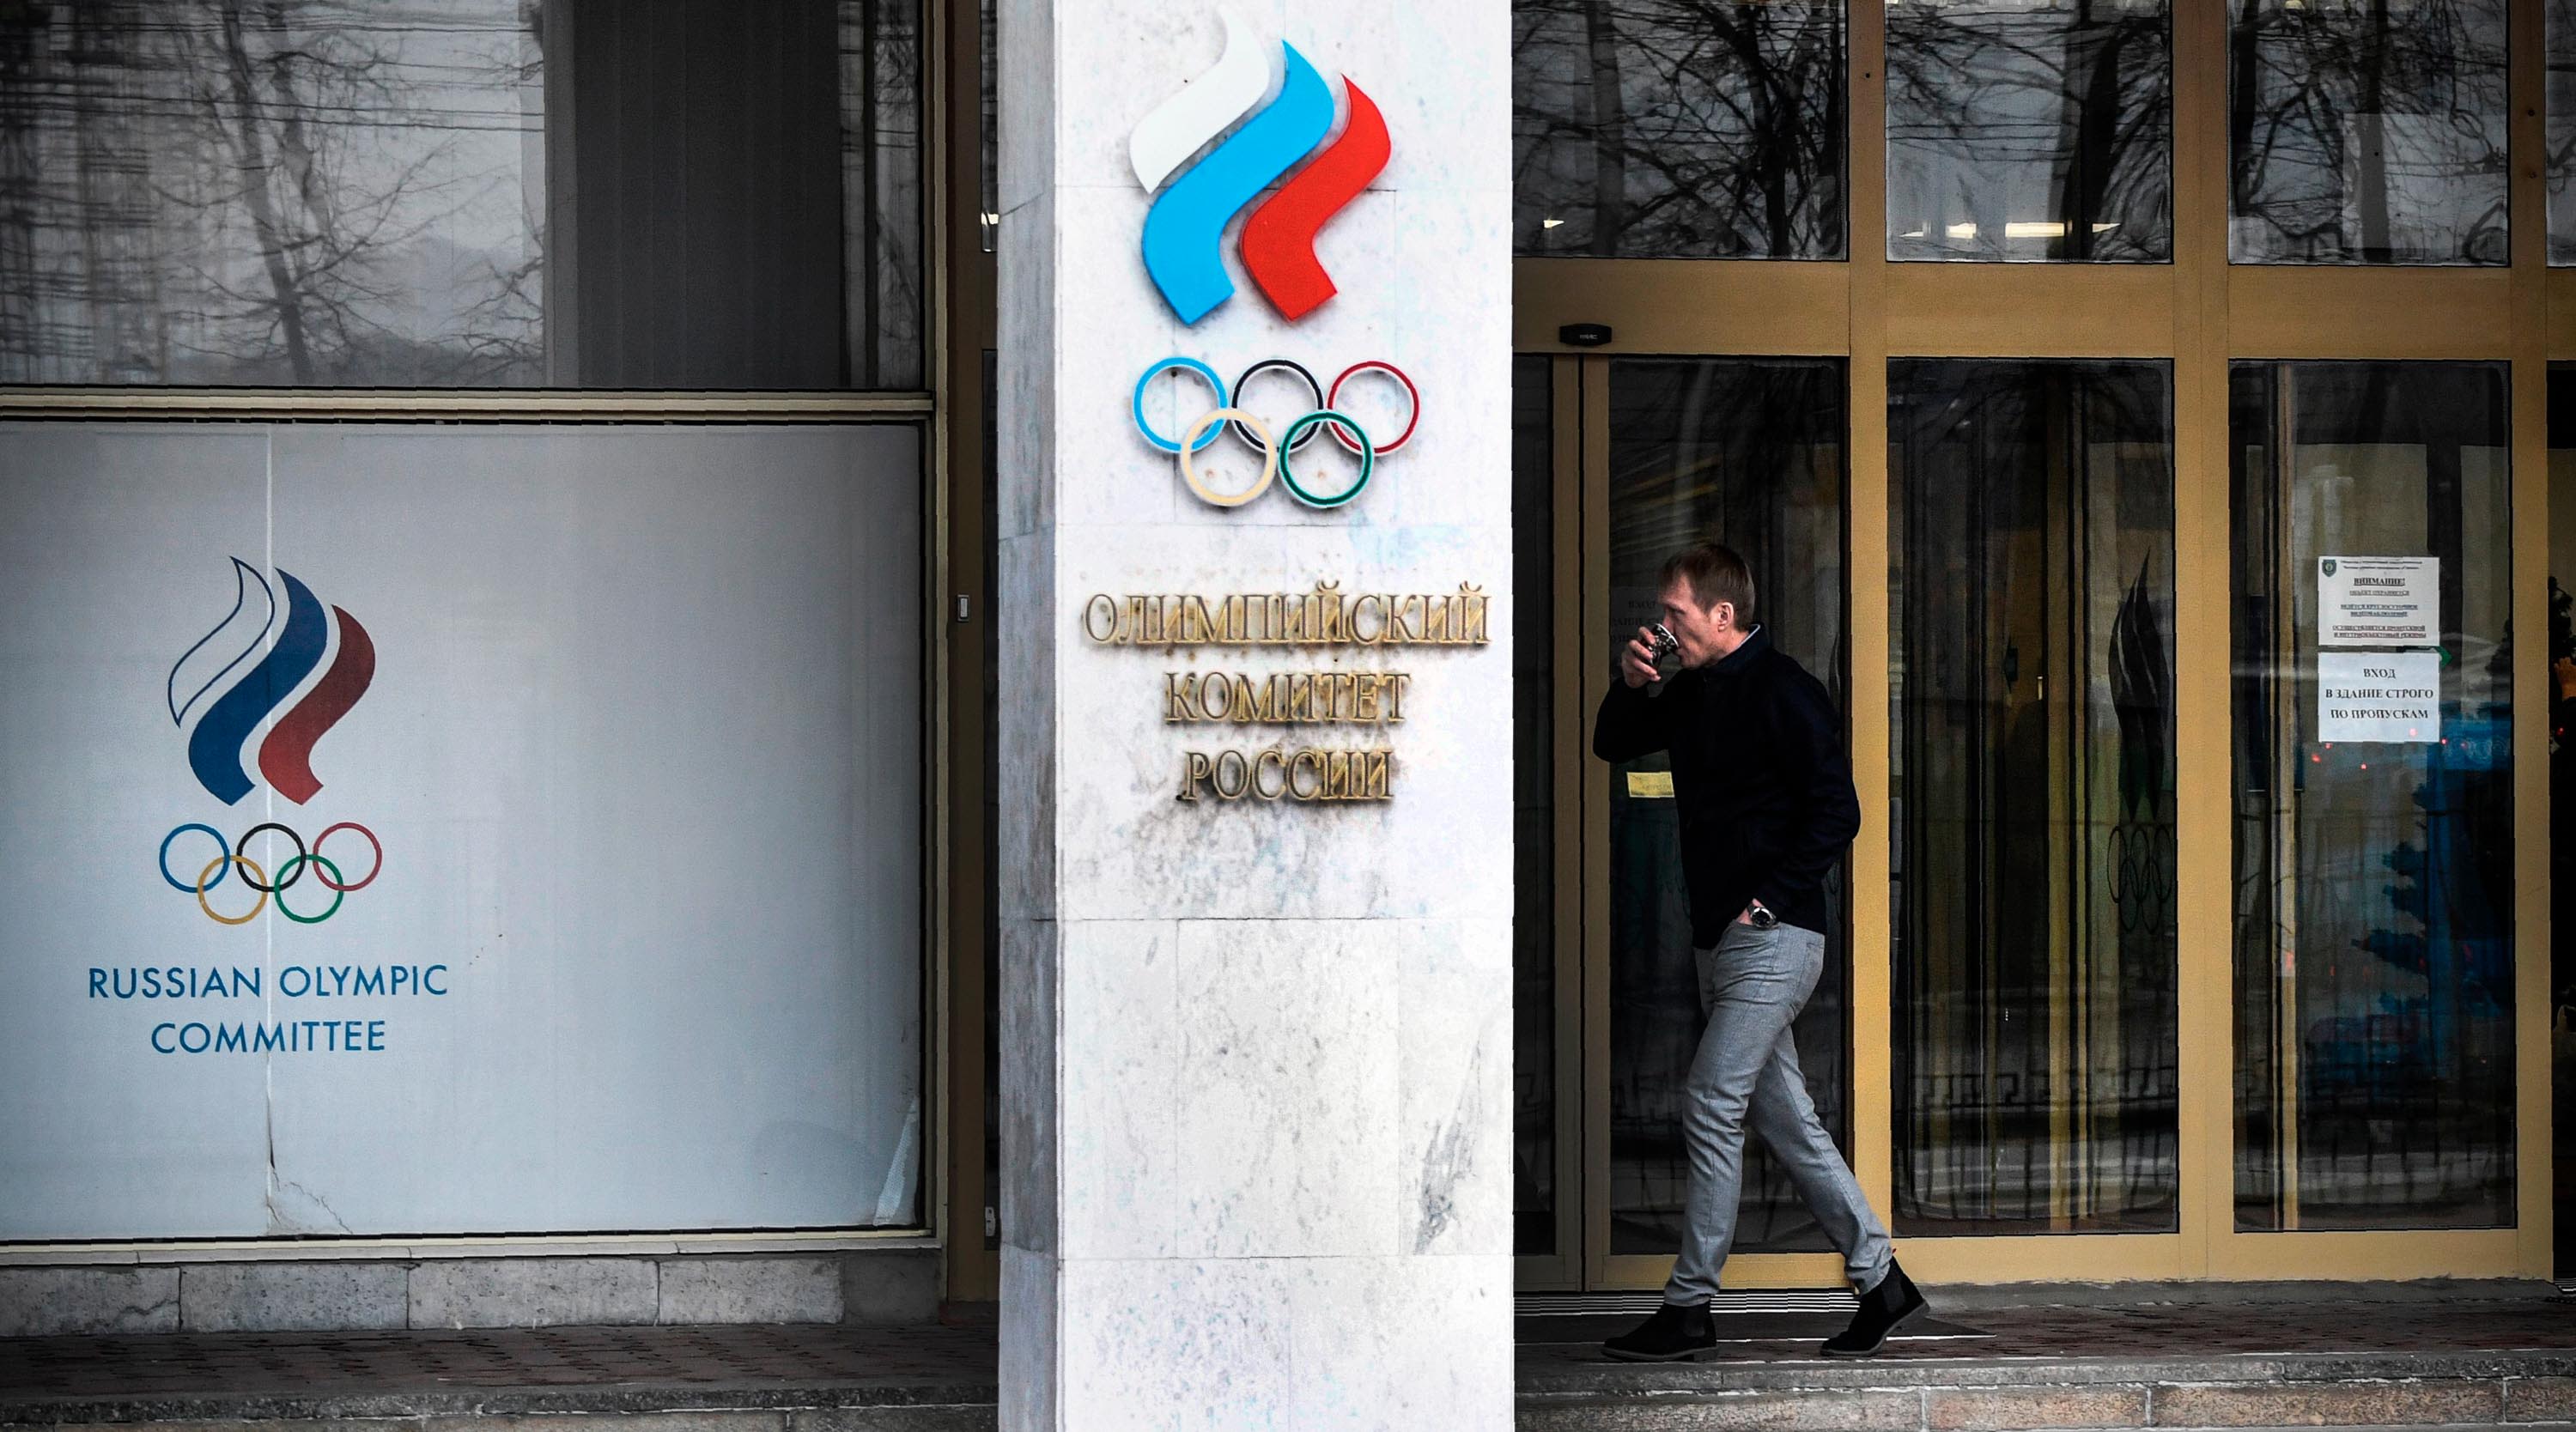 Banida por doping, Rússia adota nome ROC para disputar